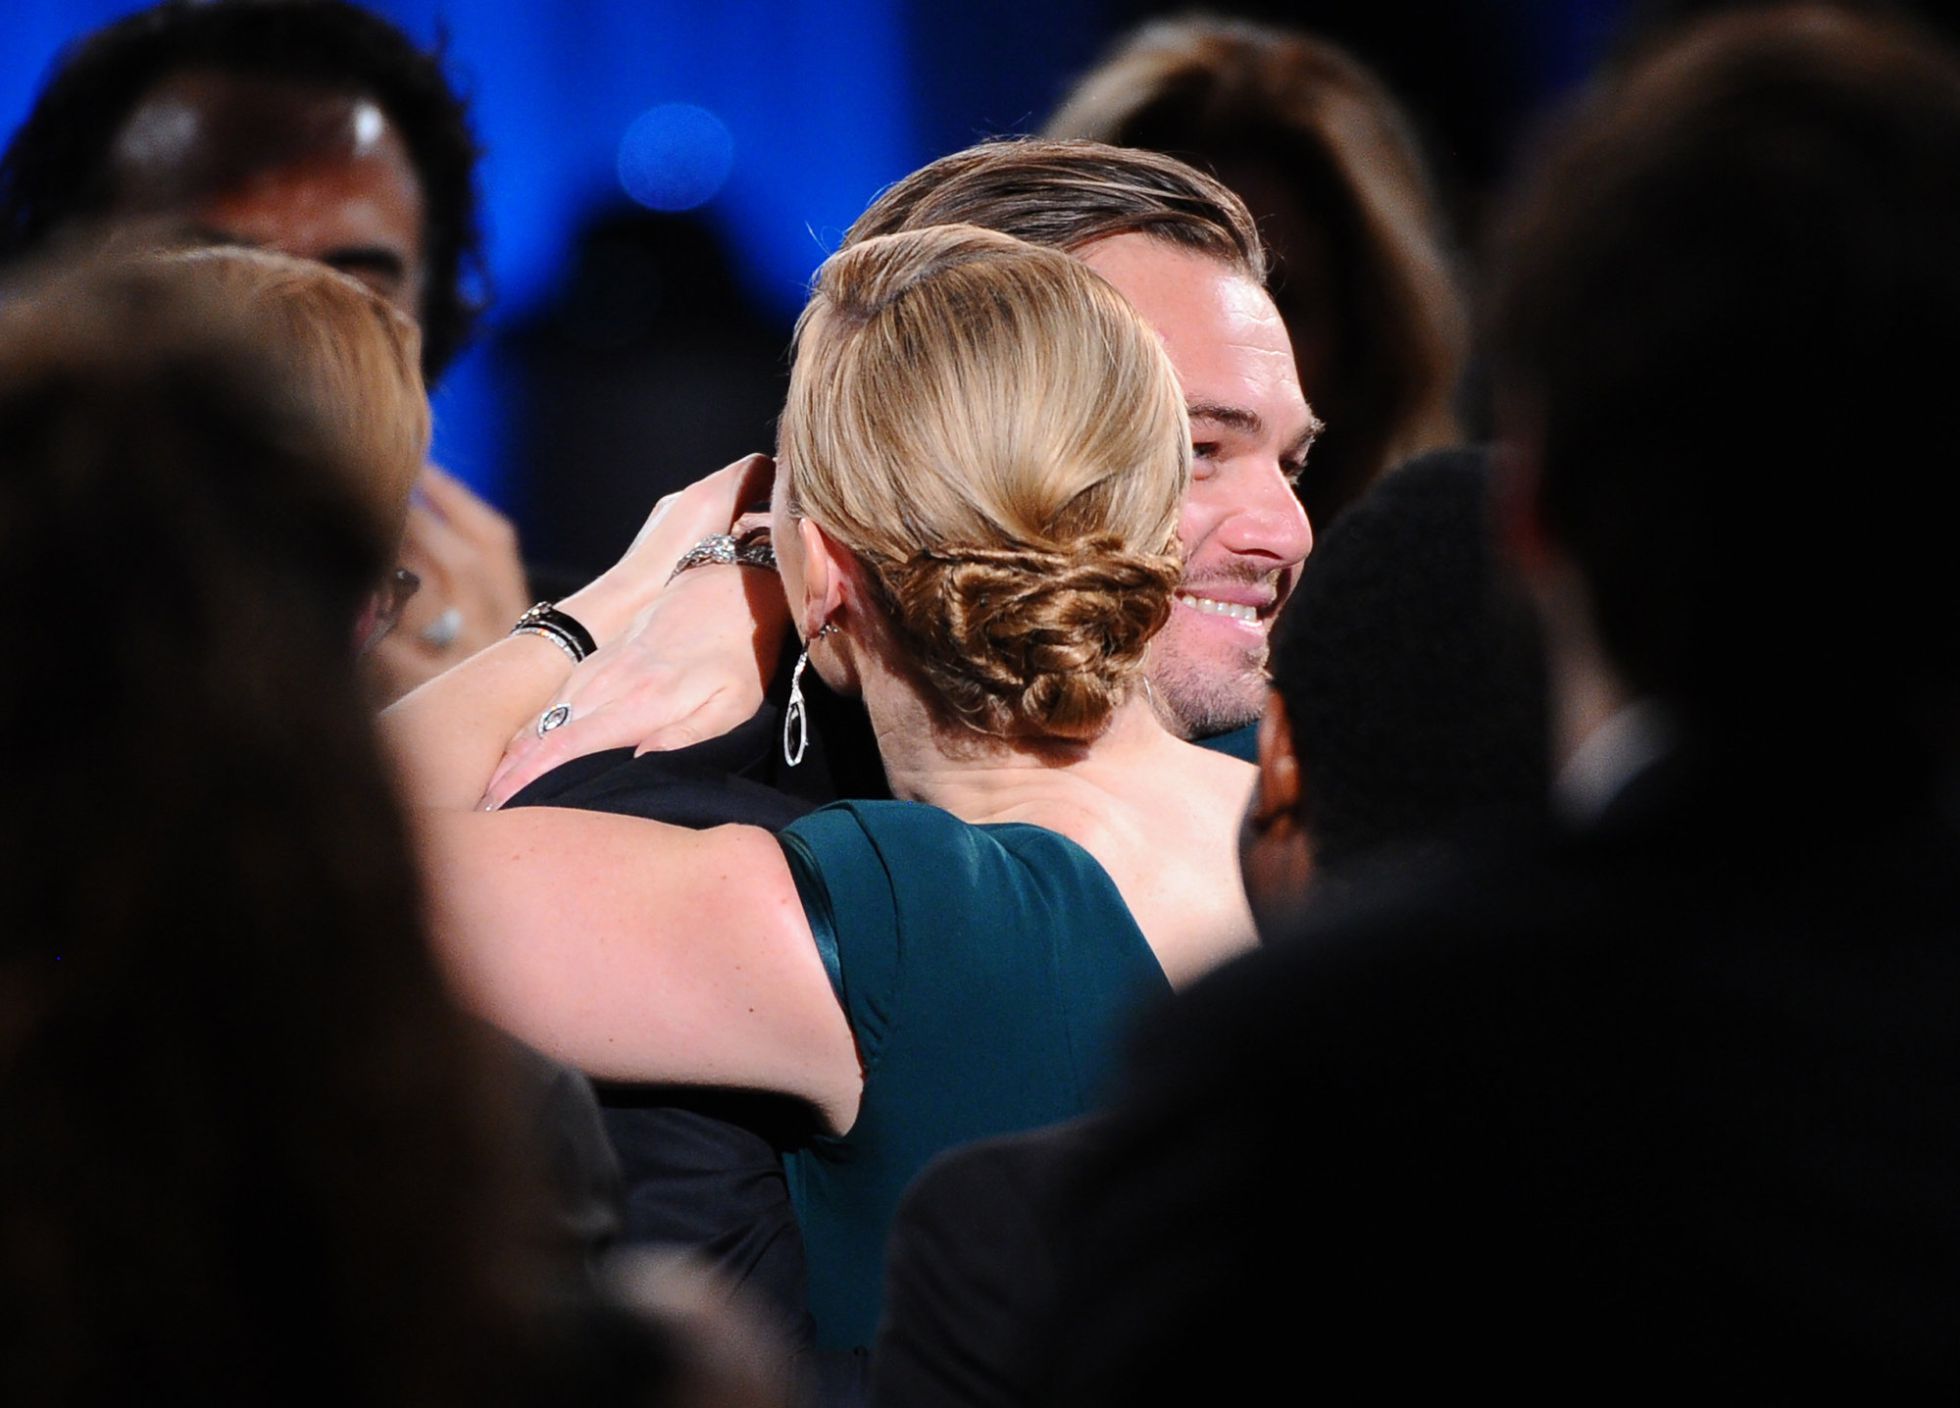 ¿Qué actriz le mostró un seno a Leonardo DiCaprio? - FOTOS